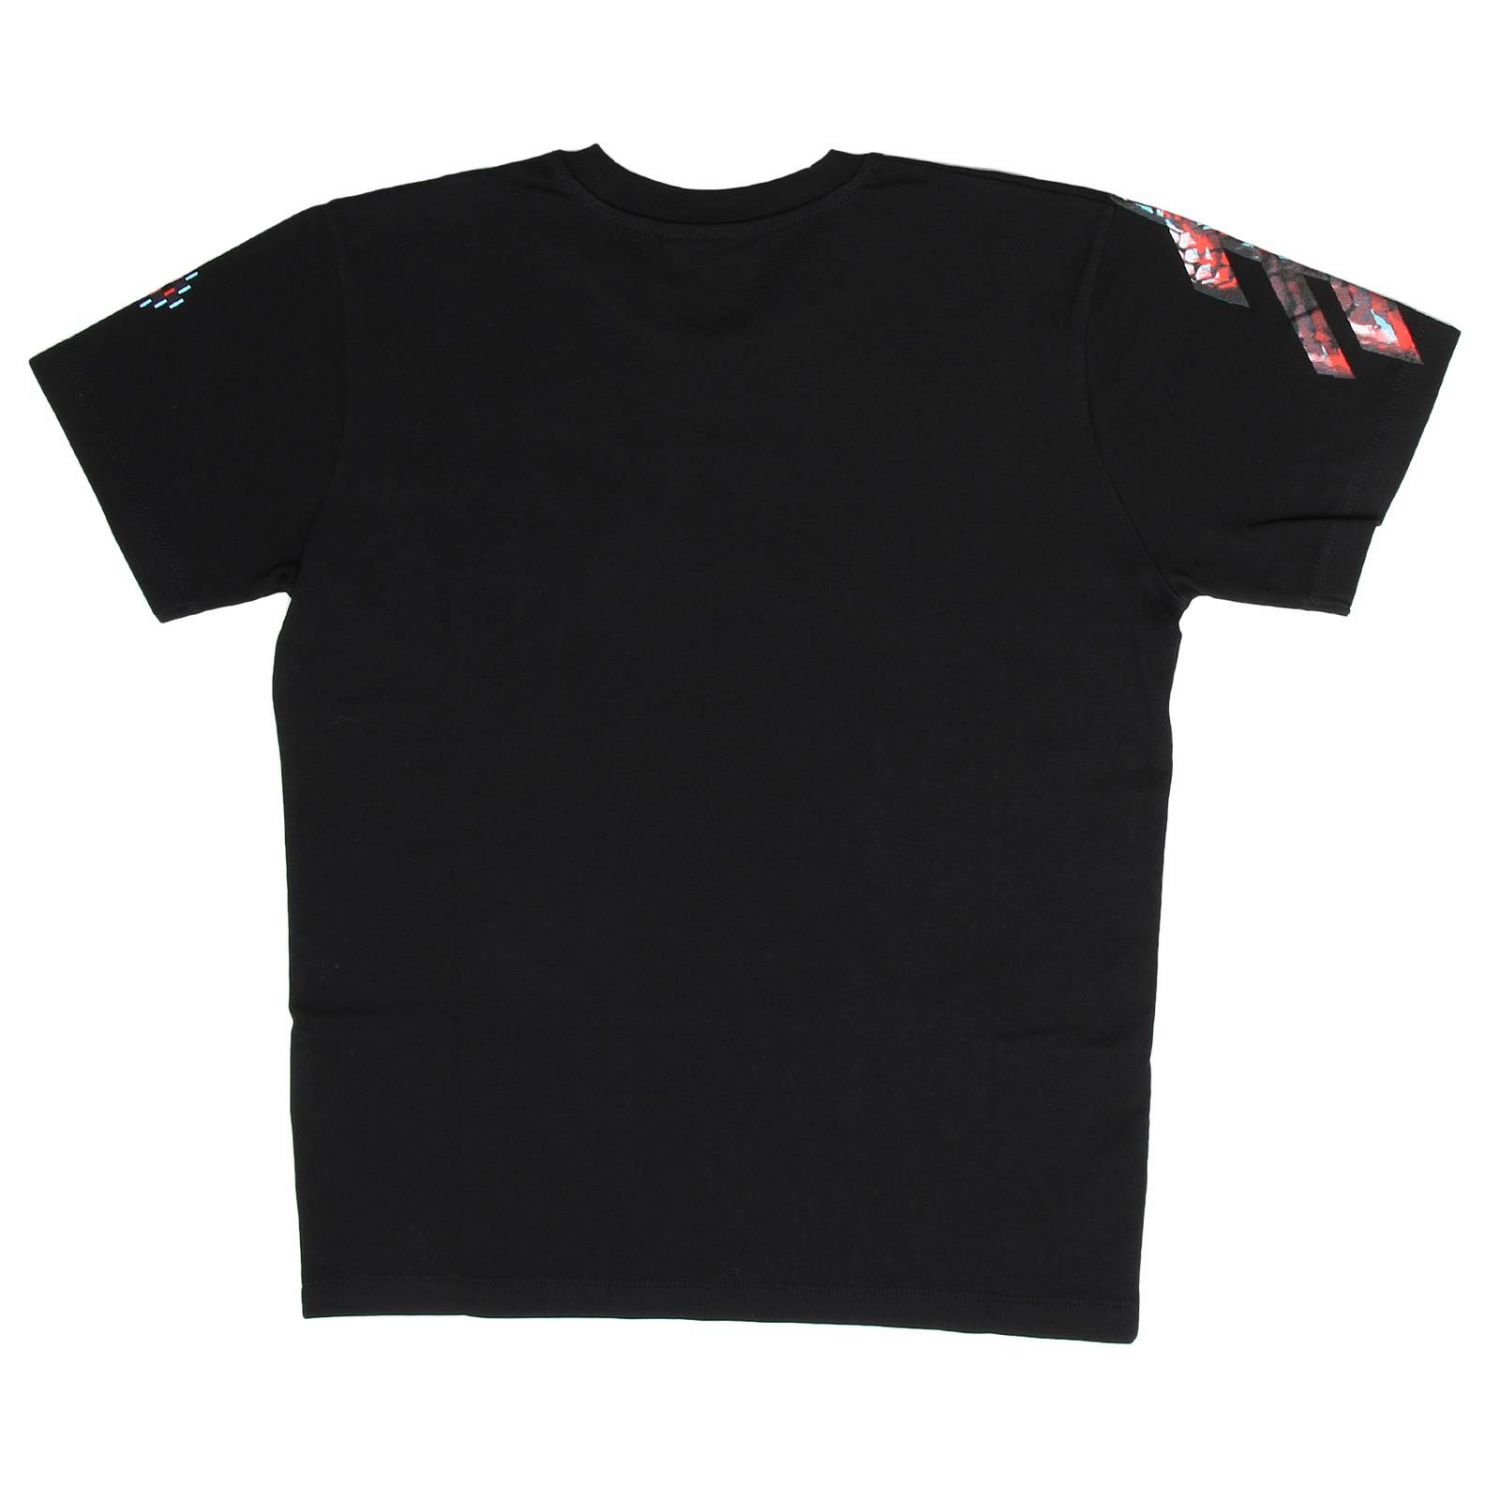 Marcelo Burlon Outlet: T-shirt kids - Black | T-Shirt Marcelo Burlon ...